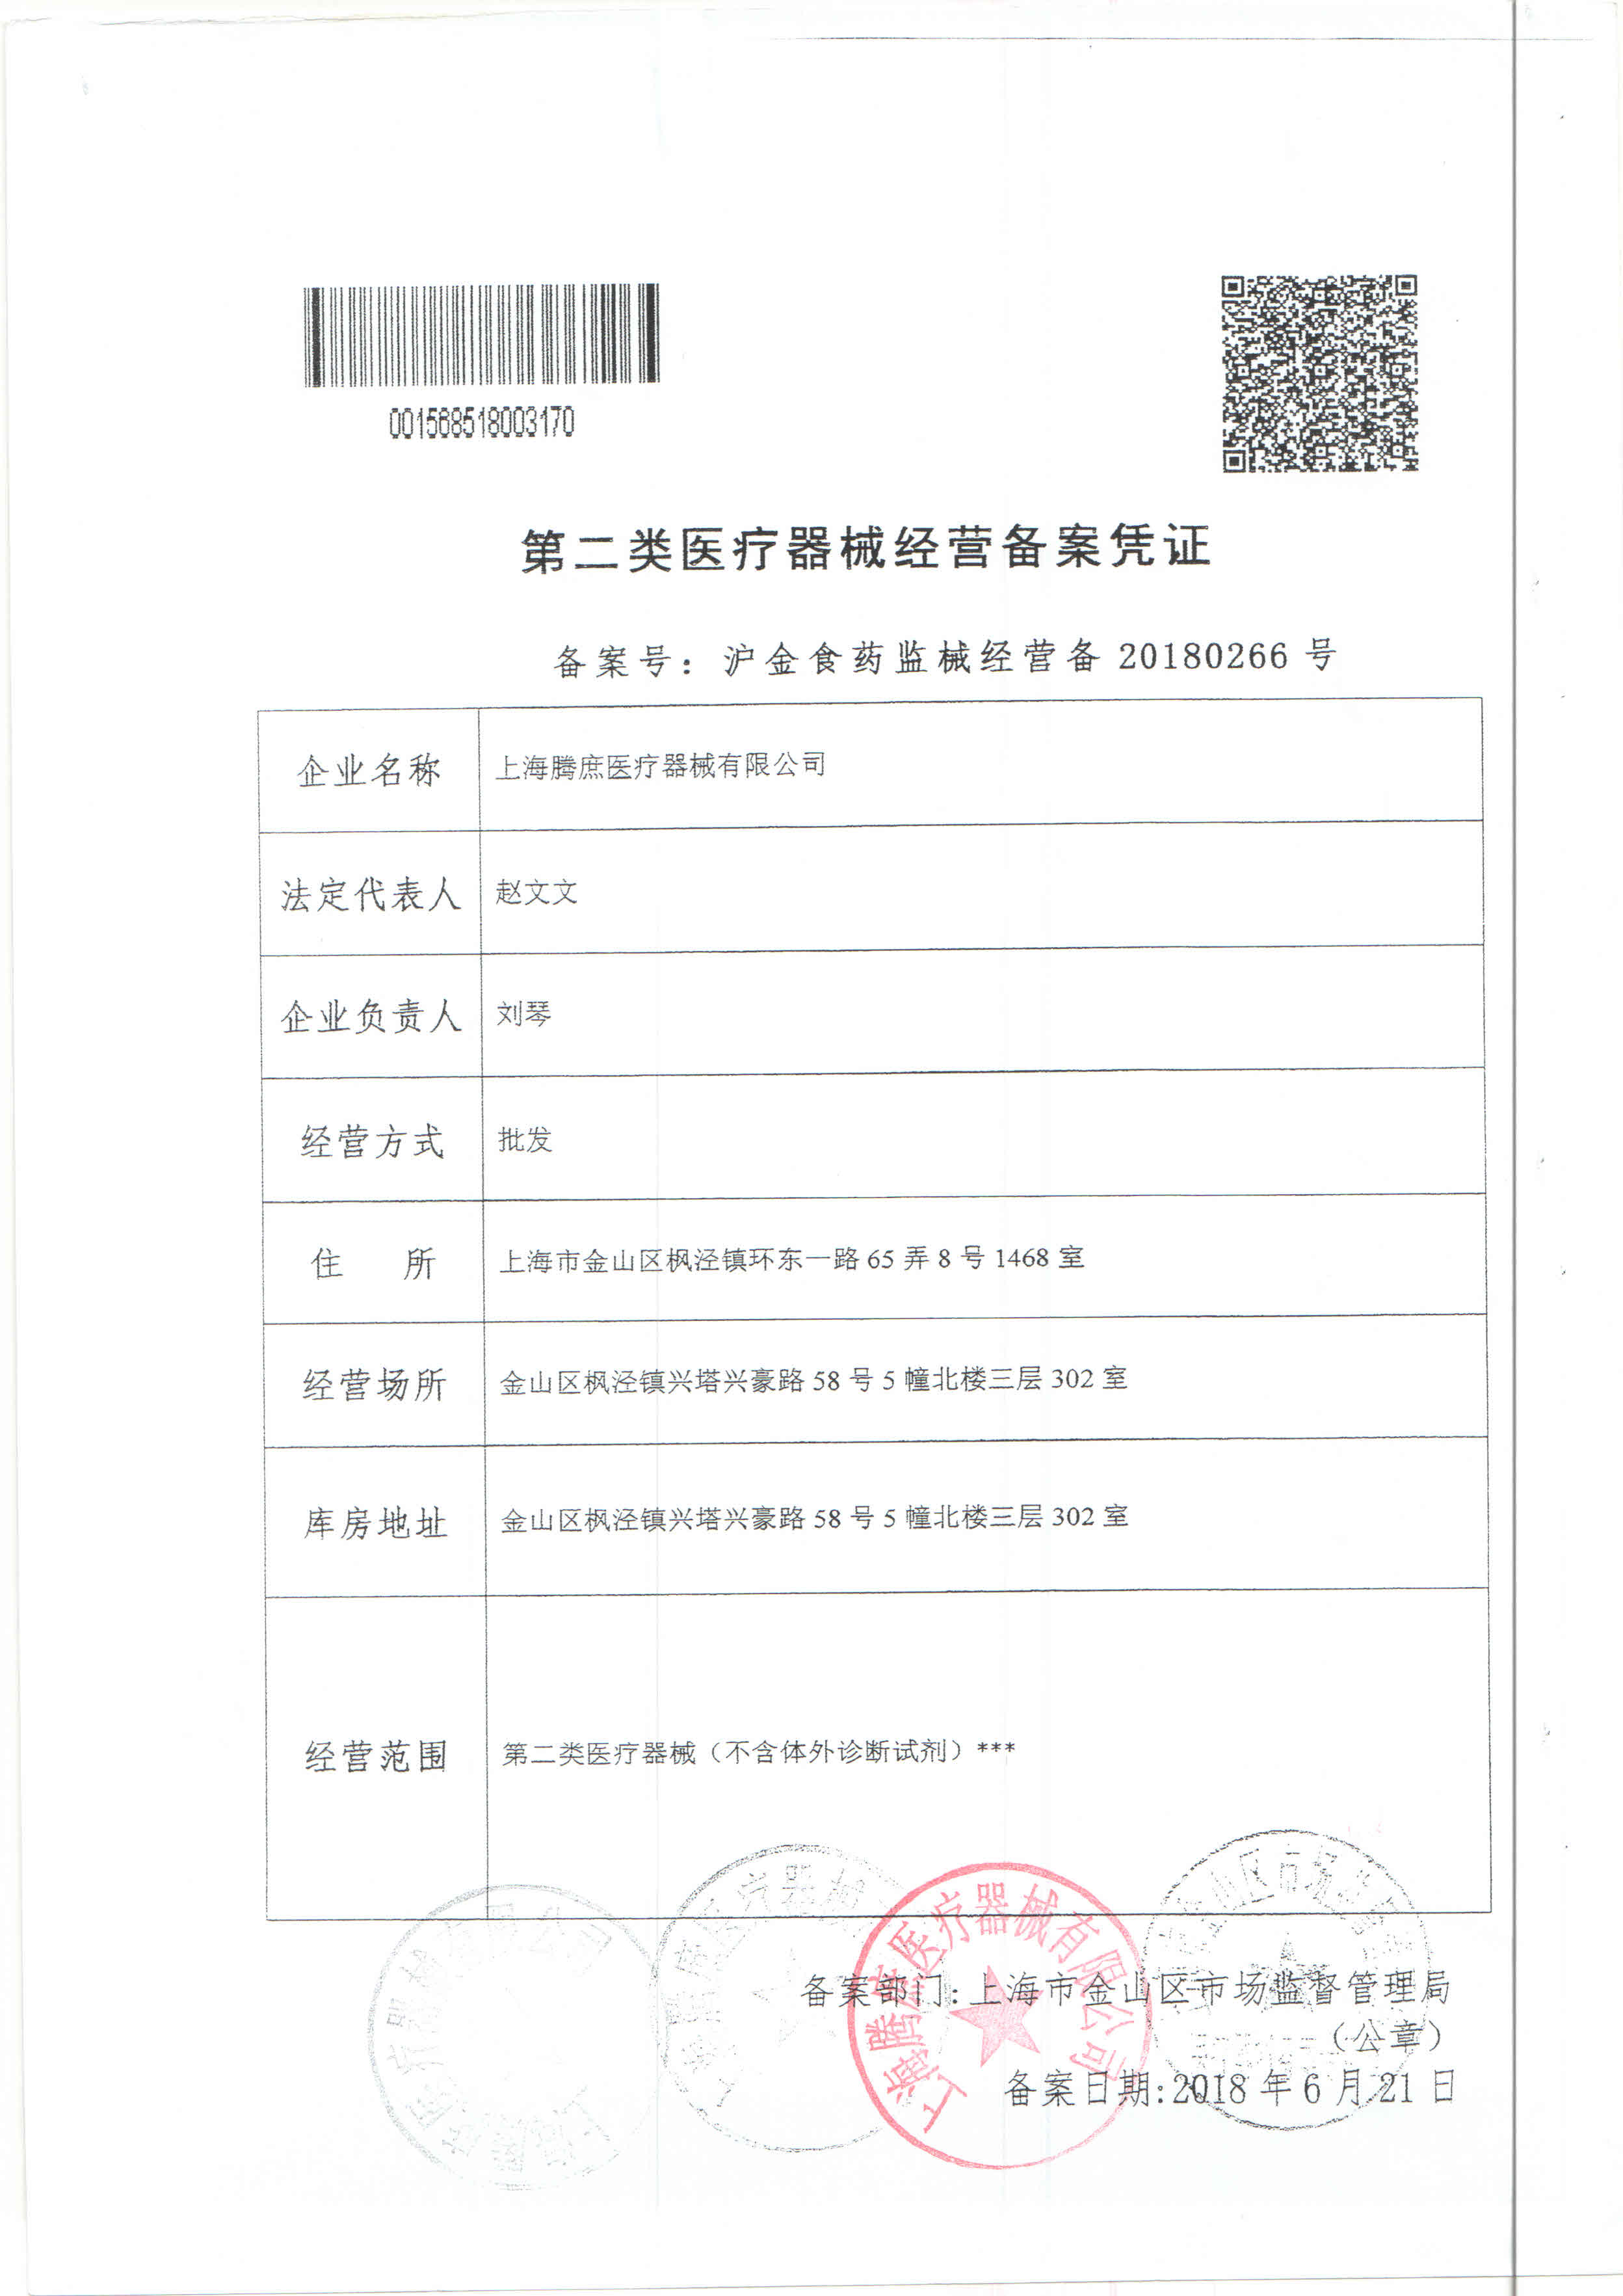 上海腾庶医疗器械-二类备案证